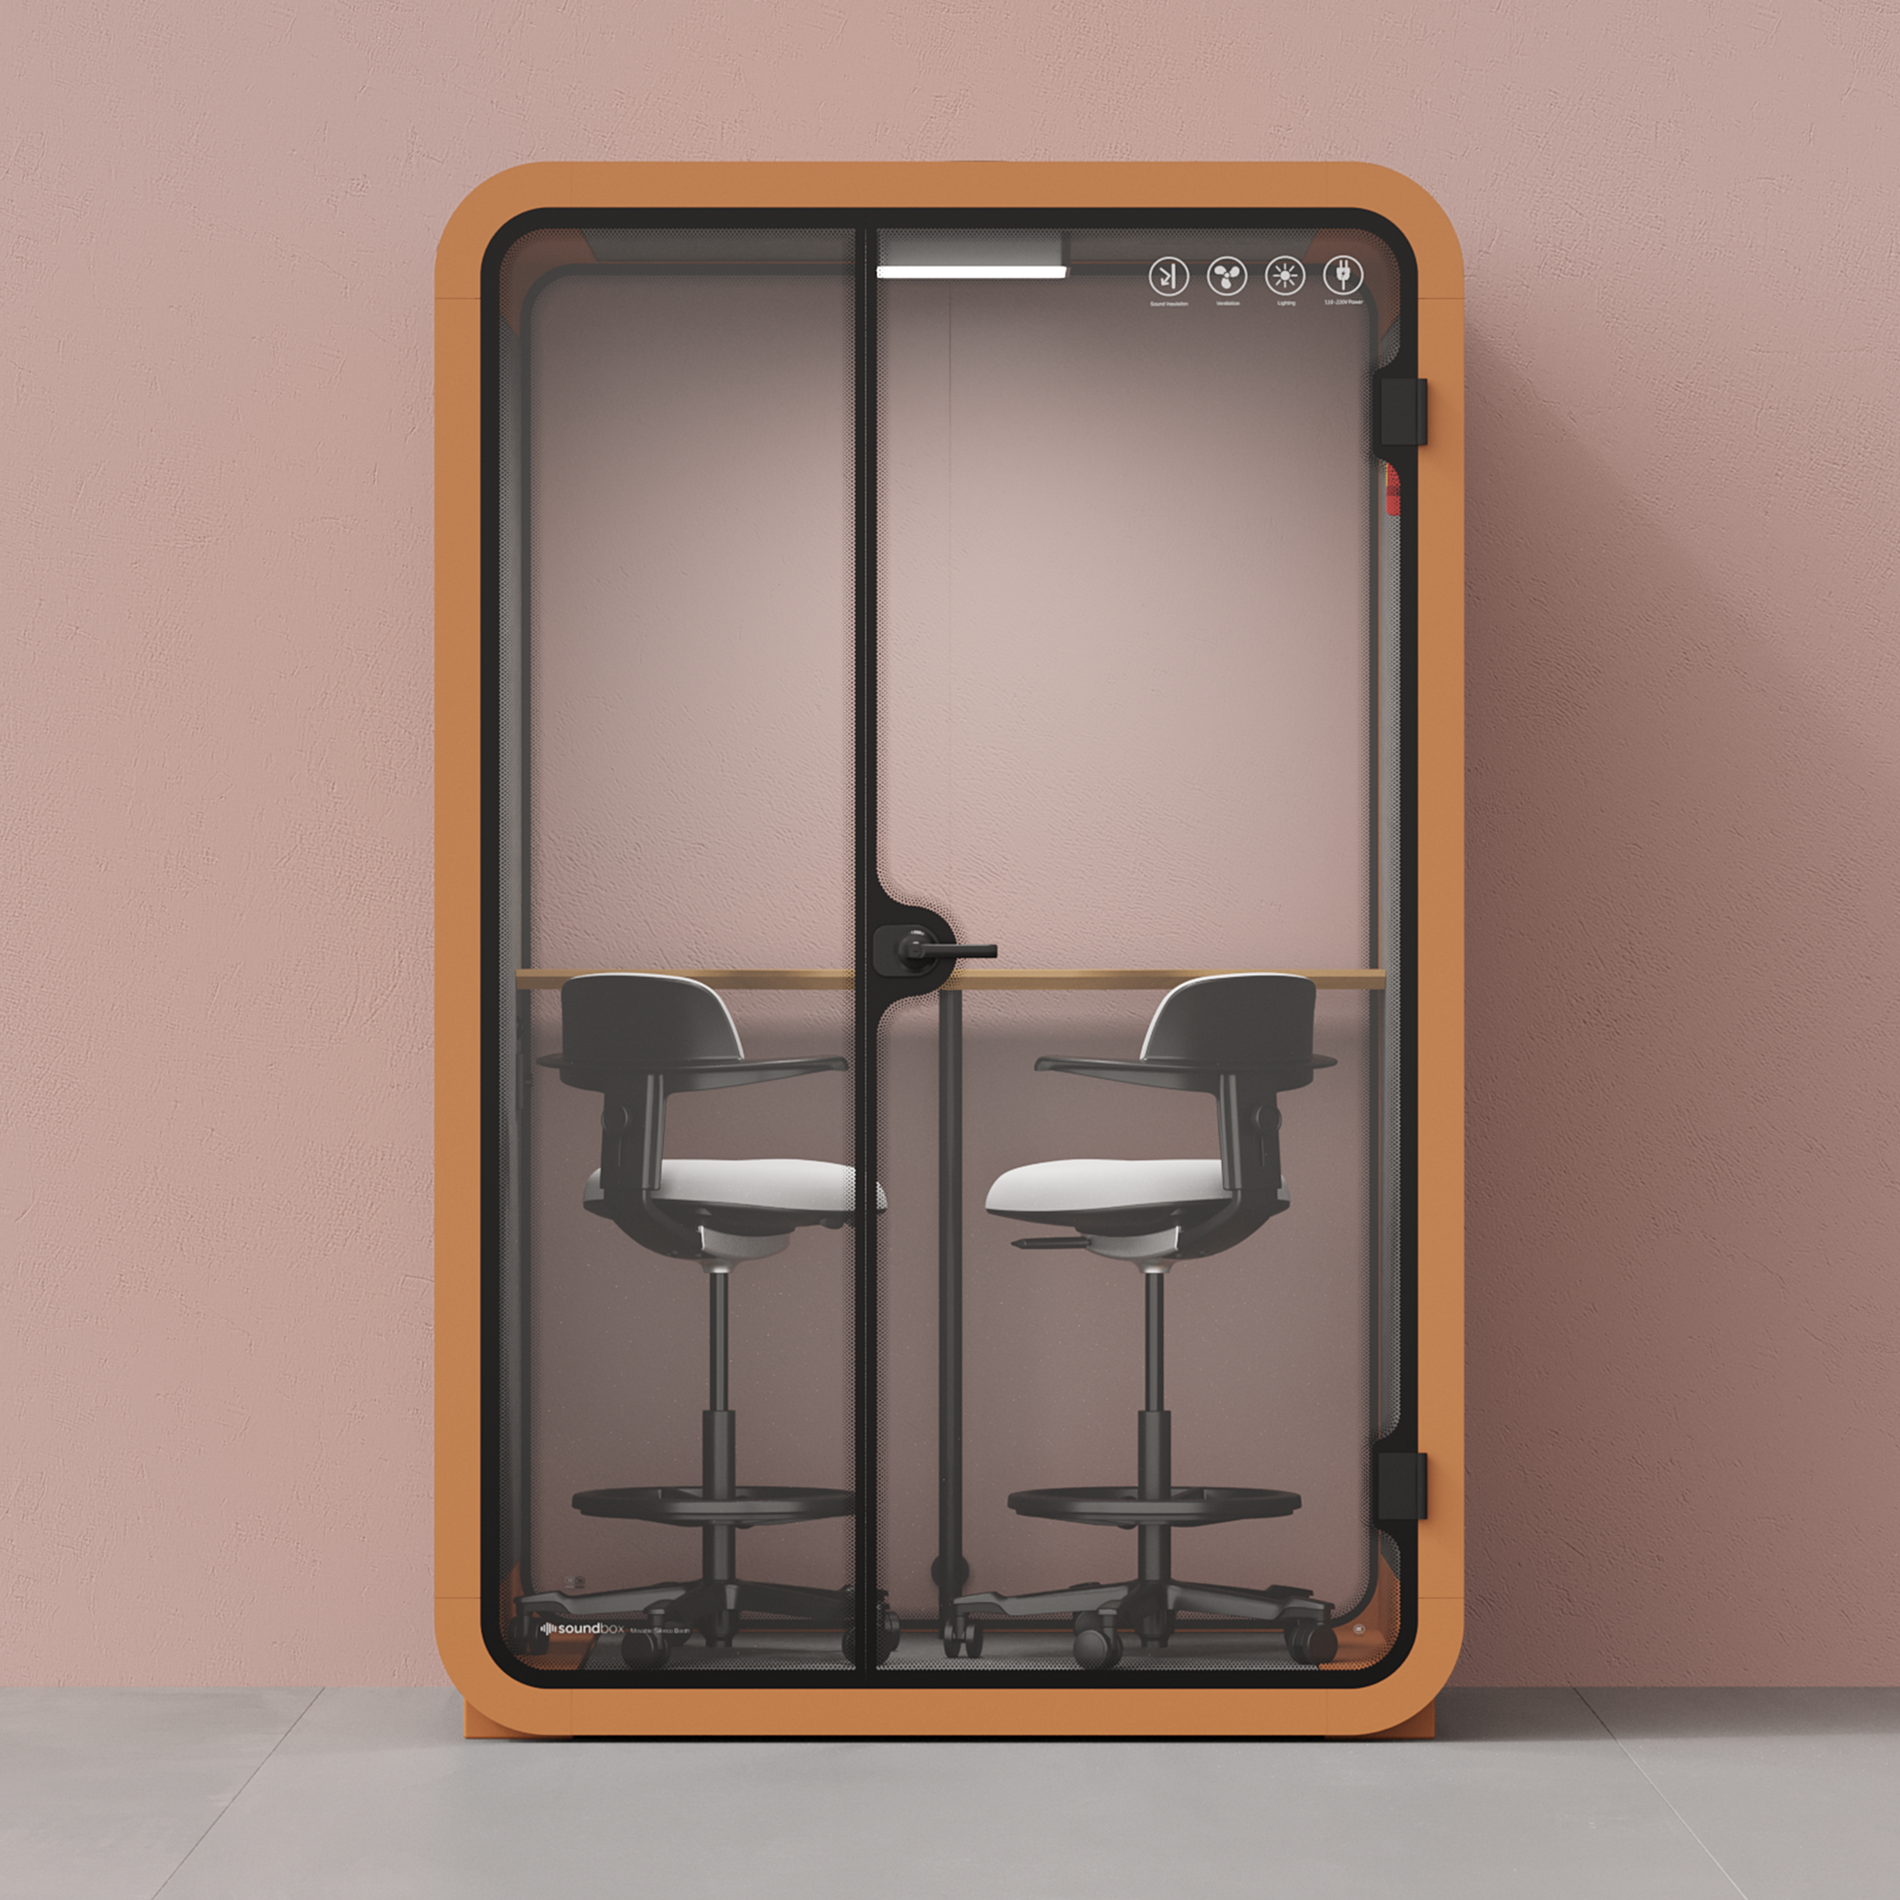 Quell Caseta de Oficina para Dos PersonasOrange / Dark Gray / Dual Zoom Room + Device Shelf + 2 Barstools